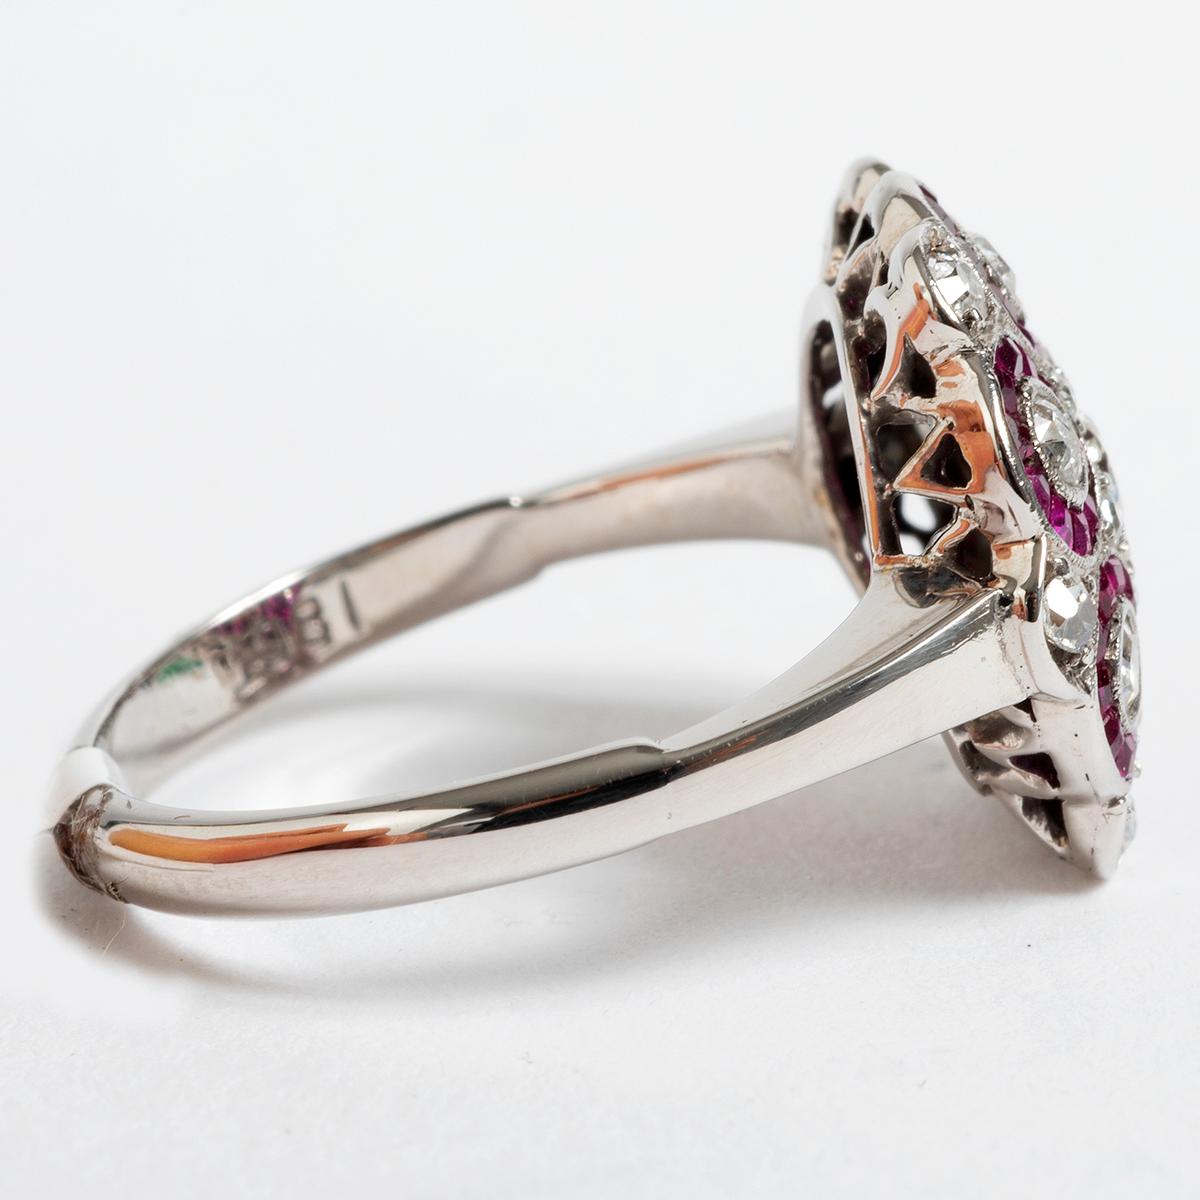 Dieser außergewöhnliche Ring im Stil einer Rubin- und Diamantblüte aus den 1940er Jahren ist in 18 Karat Weißgold gefasst und zeigt eine wunderschöne Kombination von Steinen. Der Ring wird in UK Größe L / US Größe 5.75 geliefert. Ein ideales